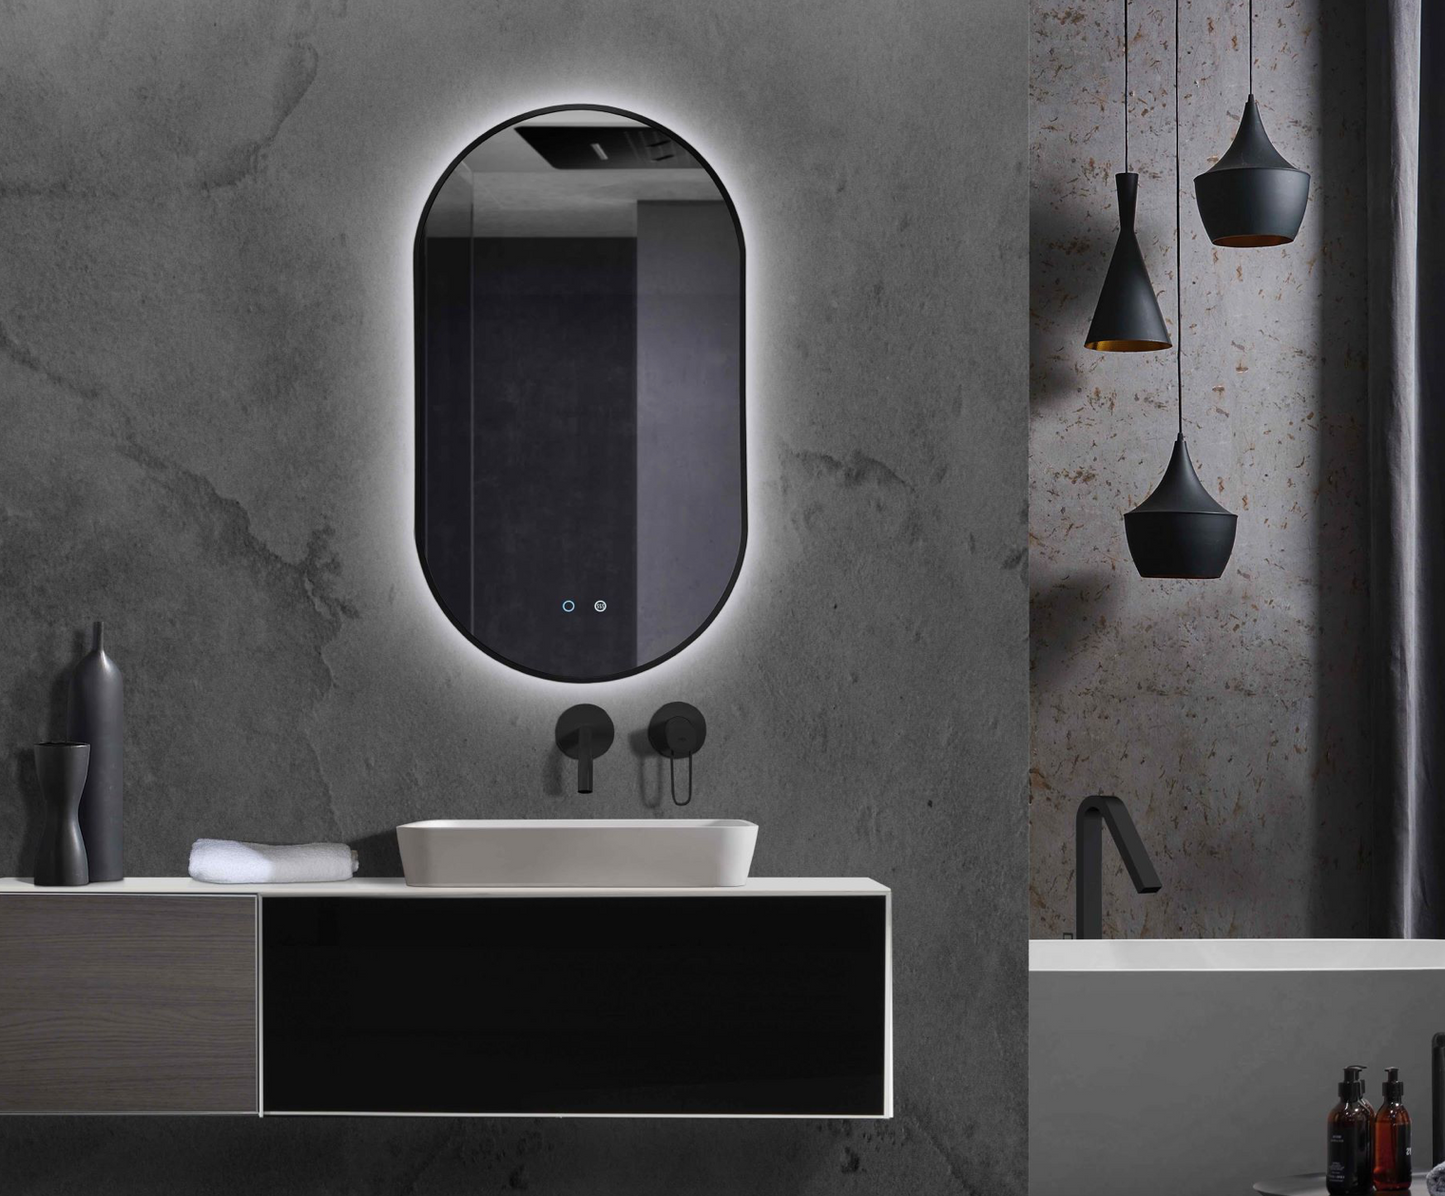 Tokyo backlit elliptical bathroom mirror by Ledimex in Industrial style